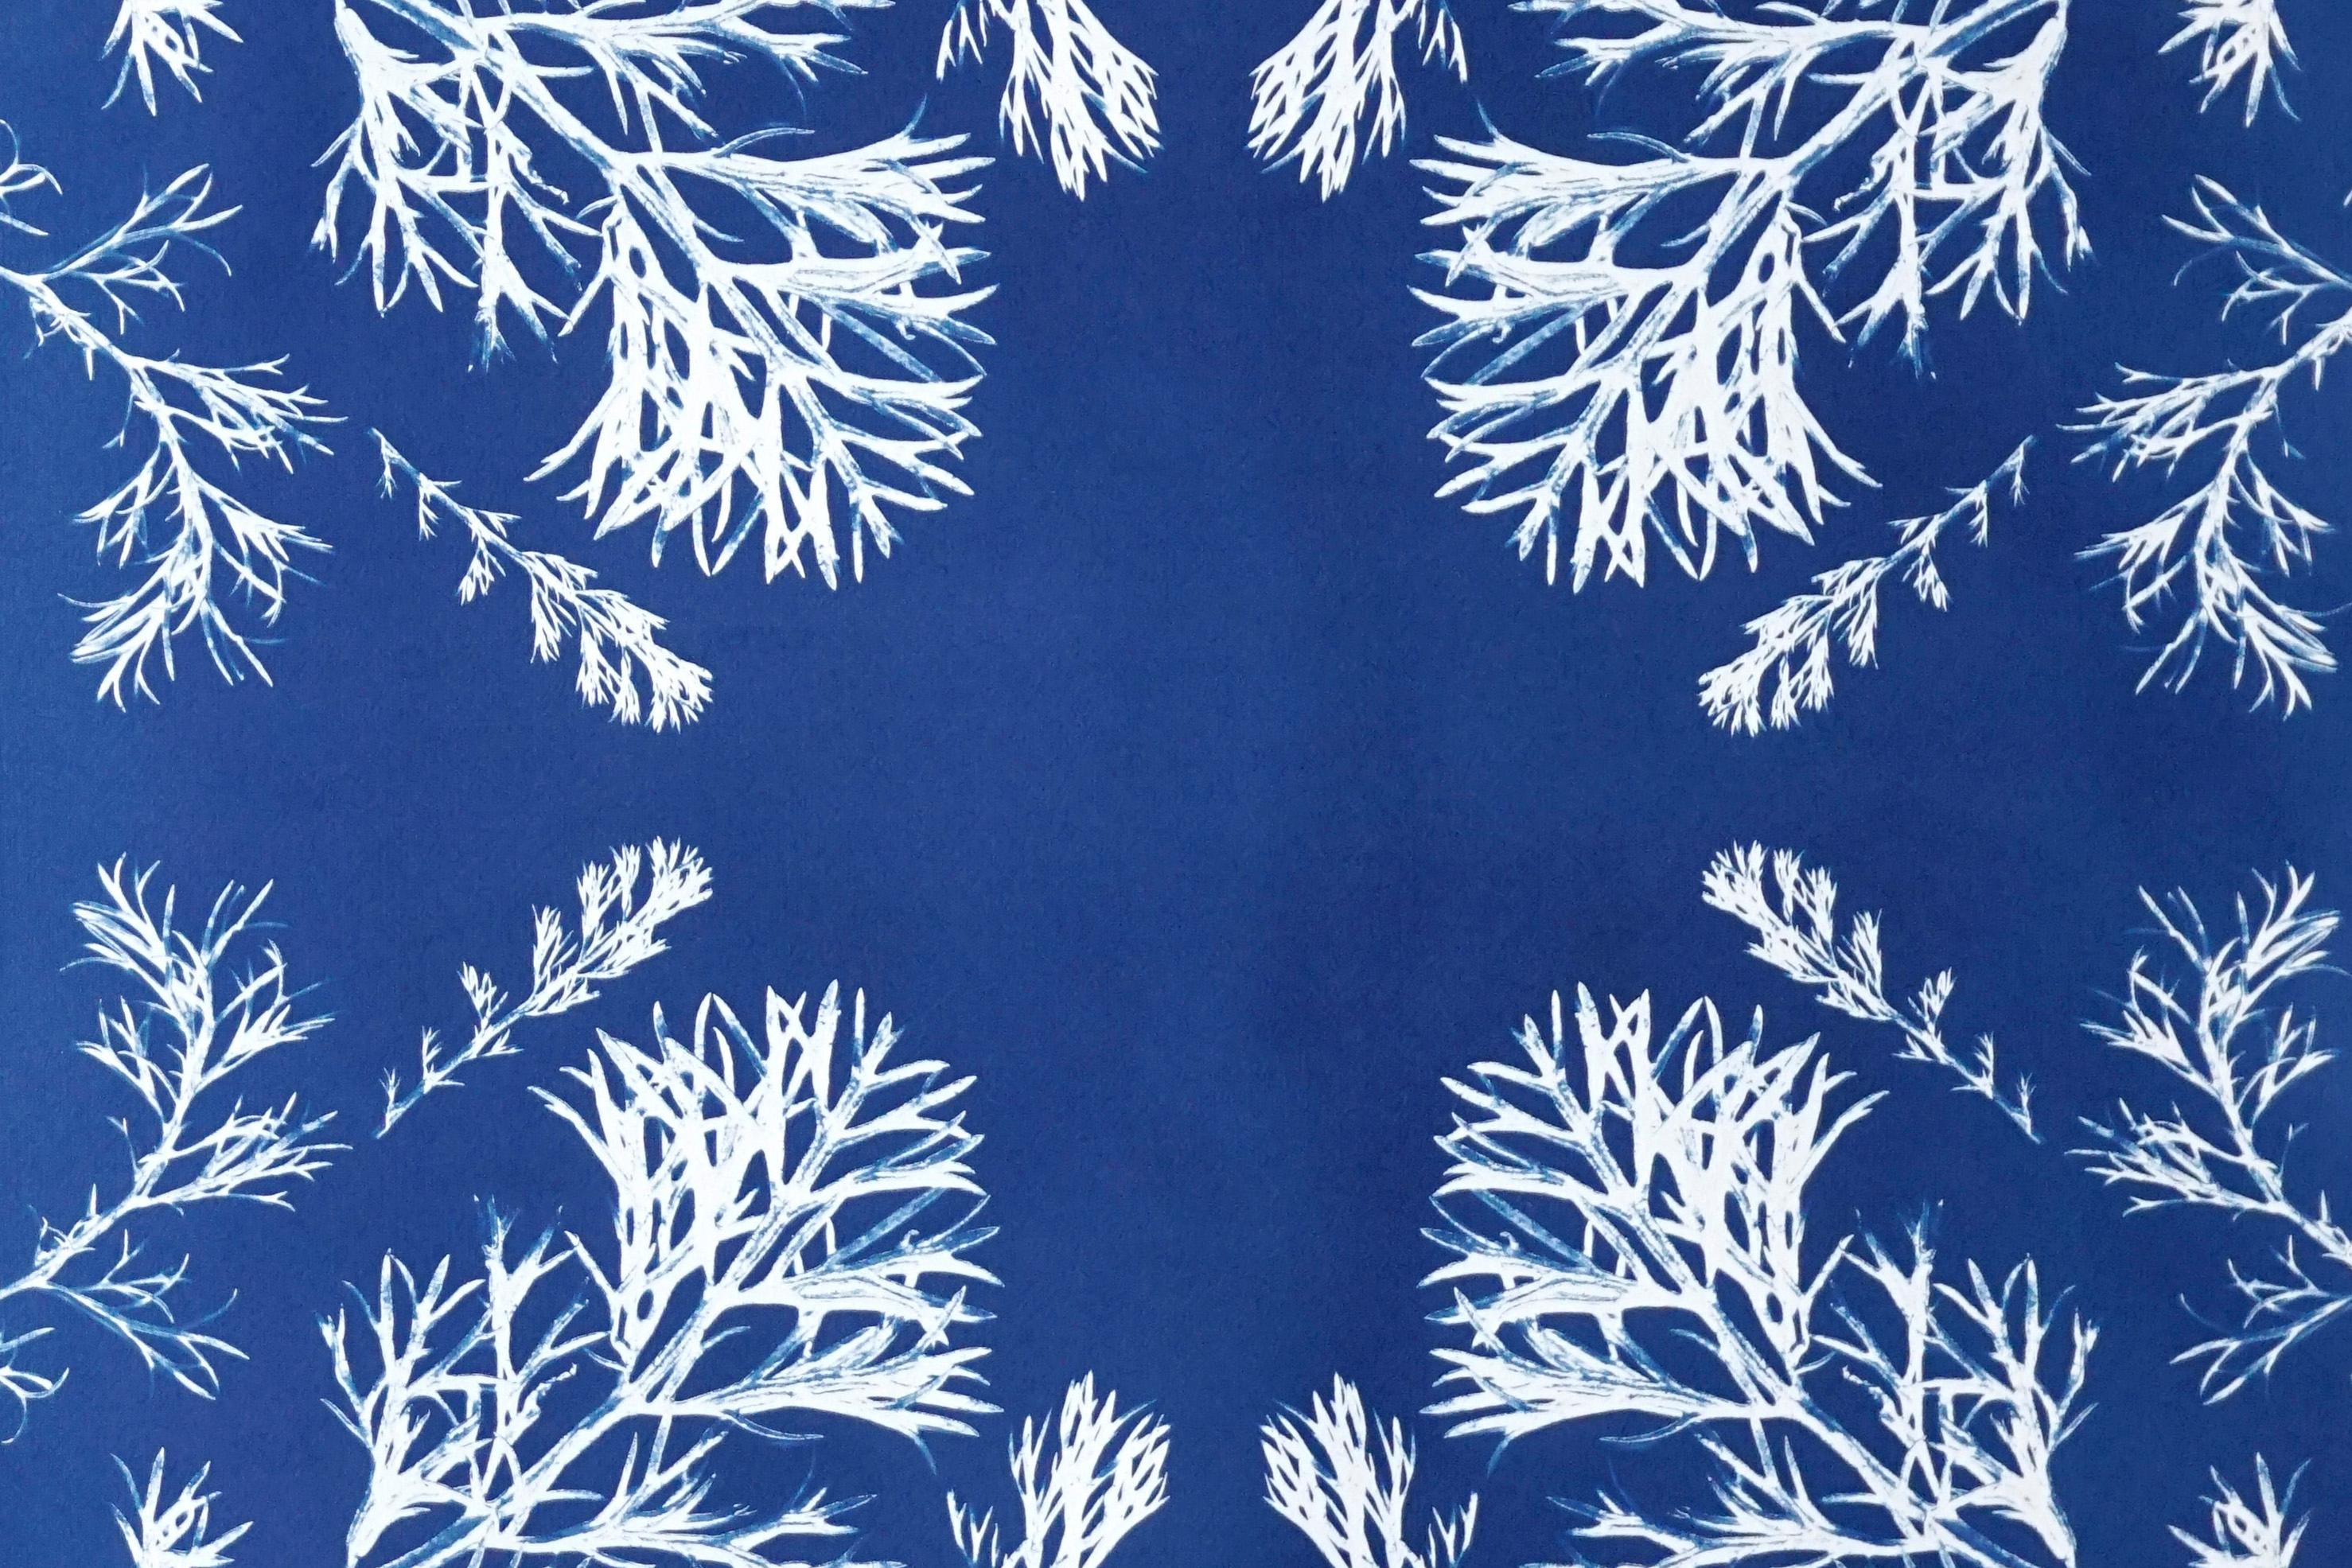 Cyanotype botanique classique de fleurs pressées vintage, de fabrication artisanale, tons bleus - Bleu Still-Life Painting par Kind of Cyan